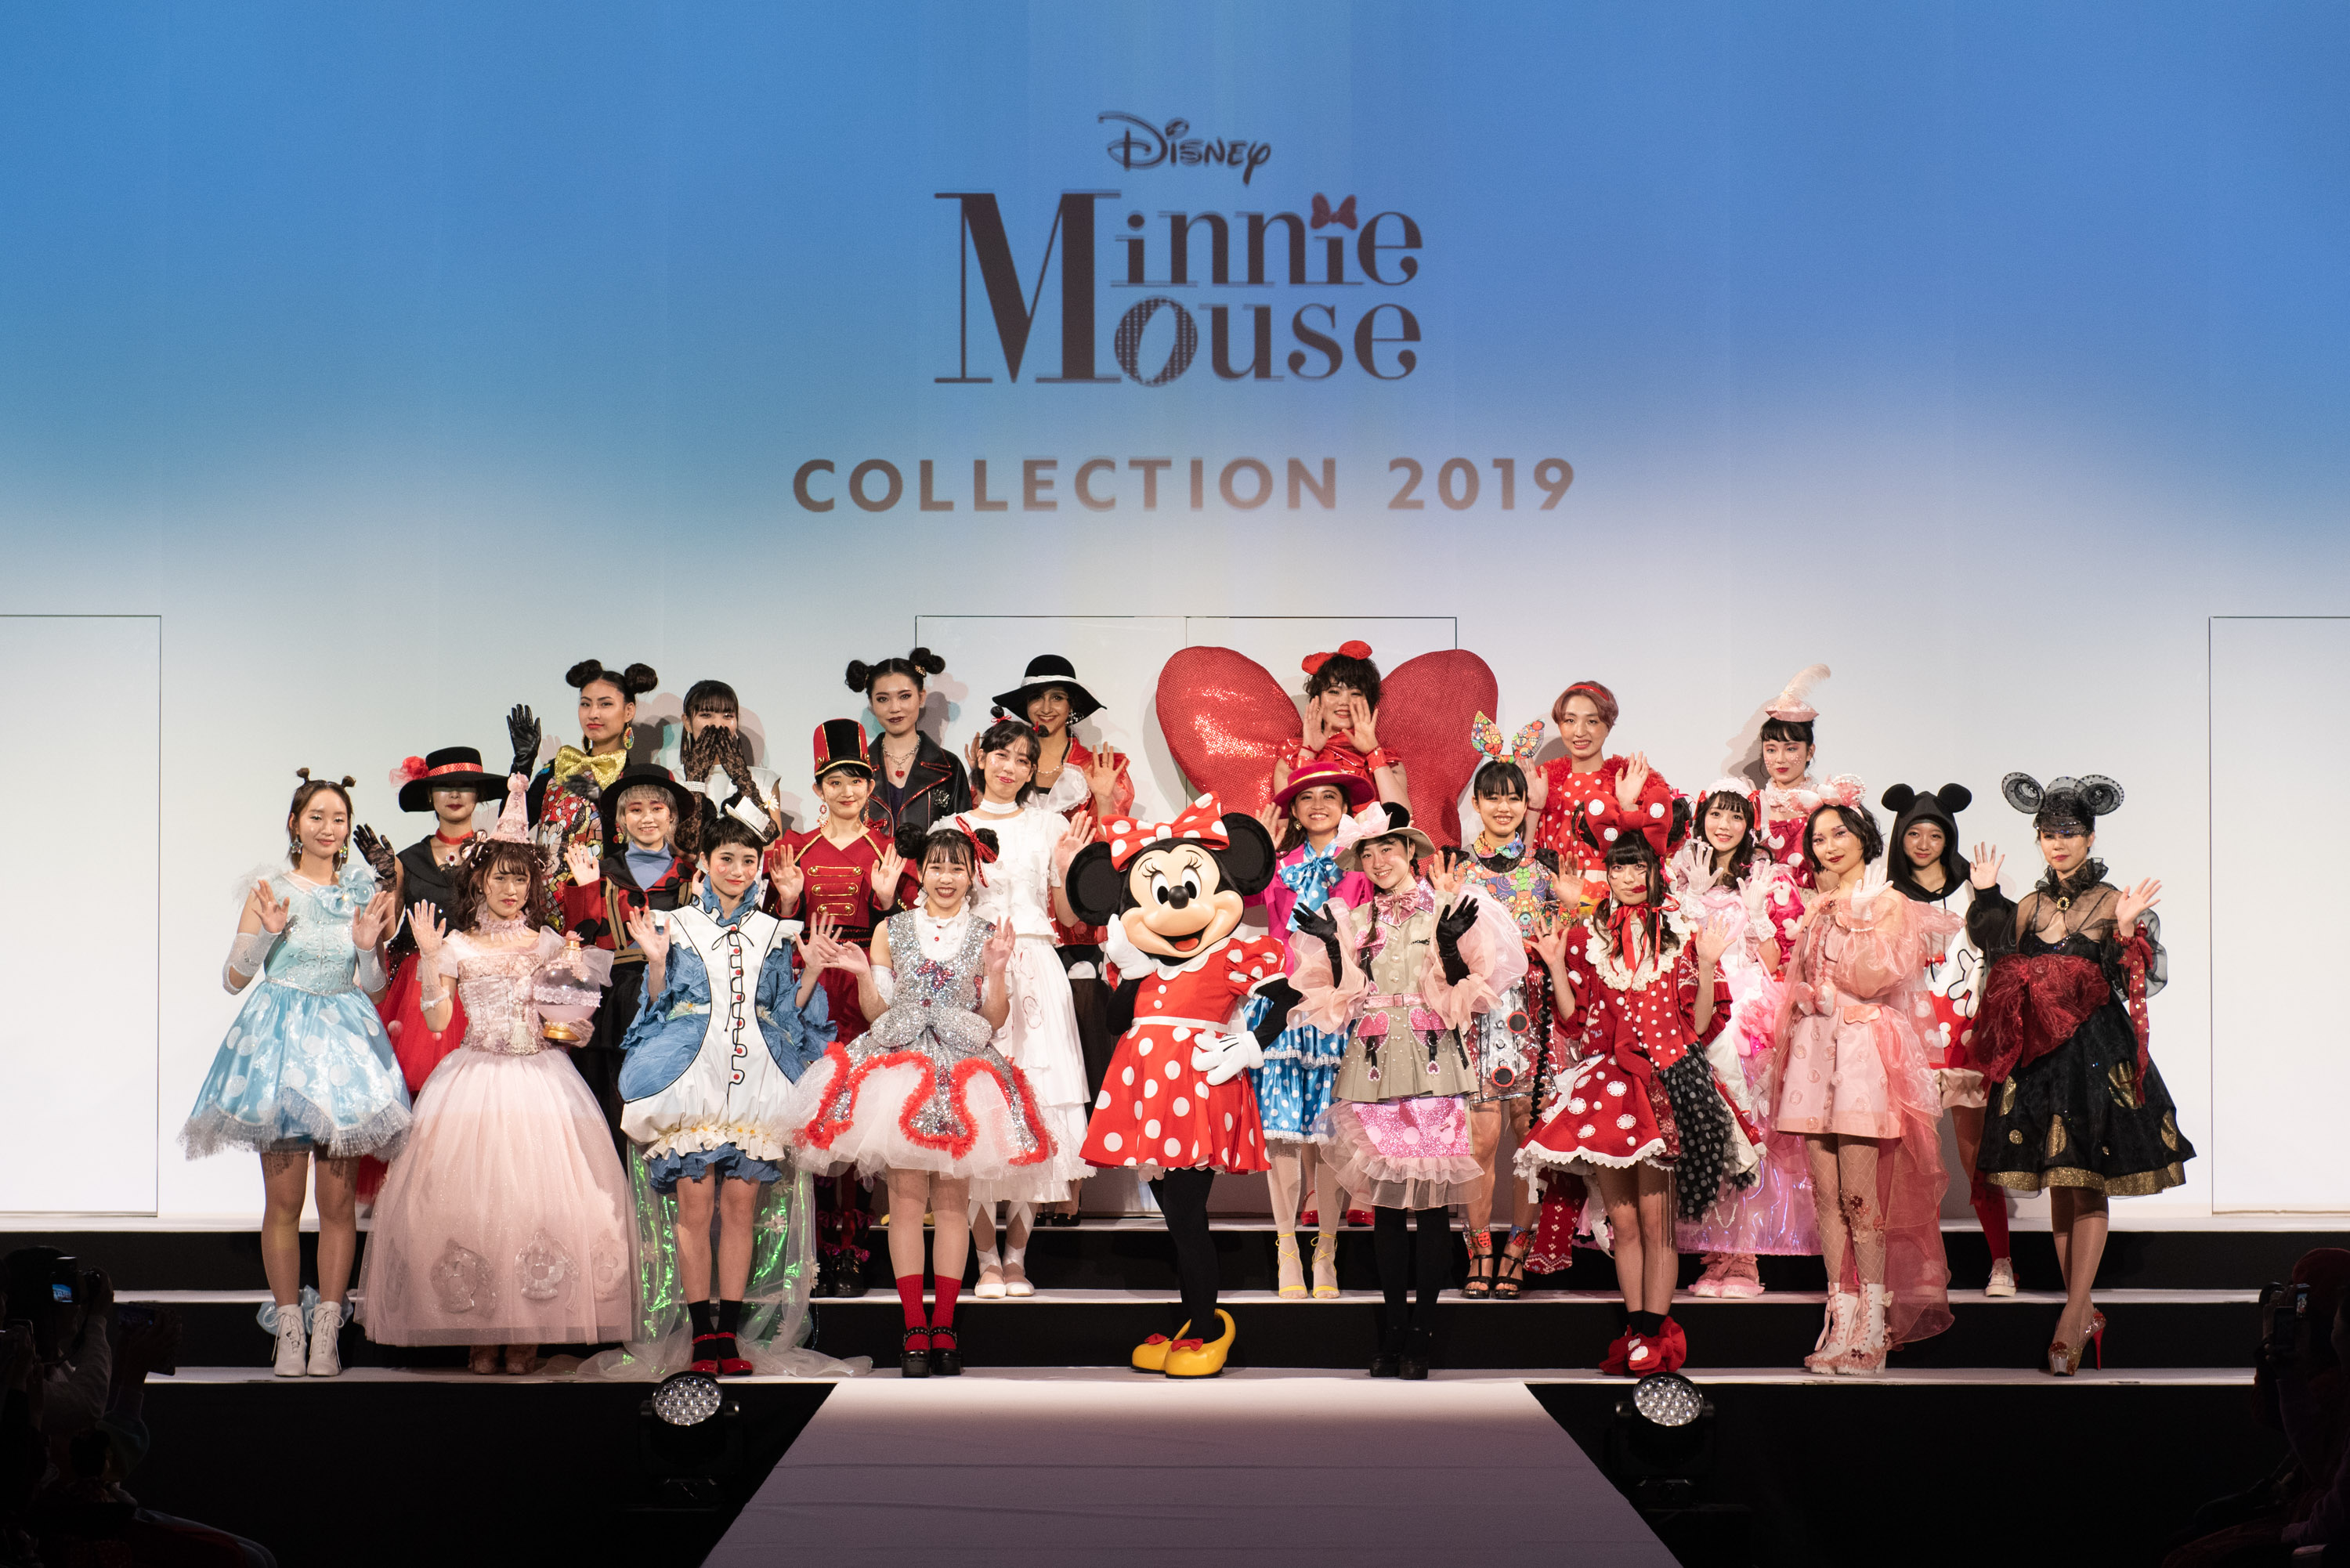 ウォルト ディズニー ジャパン 文化服装学院 Minnie Mouse Collection 19 開催 服飾 ファッション専門学校の文化 服装学院